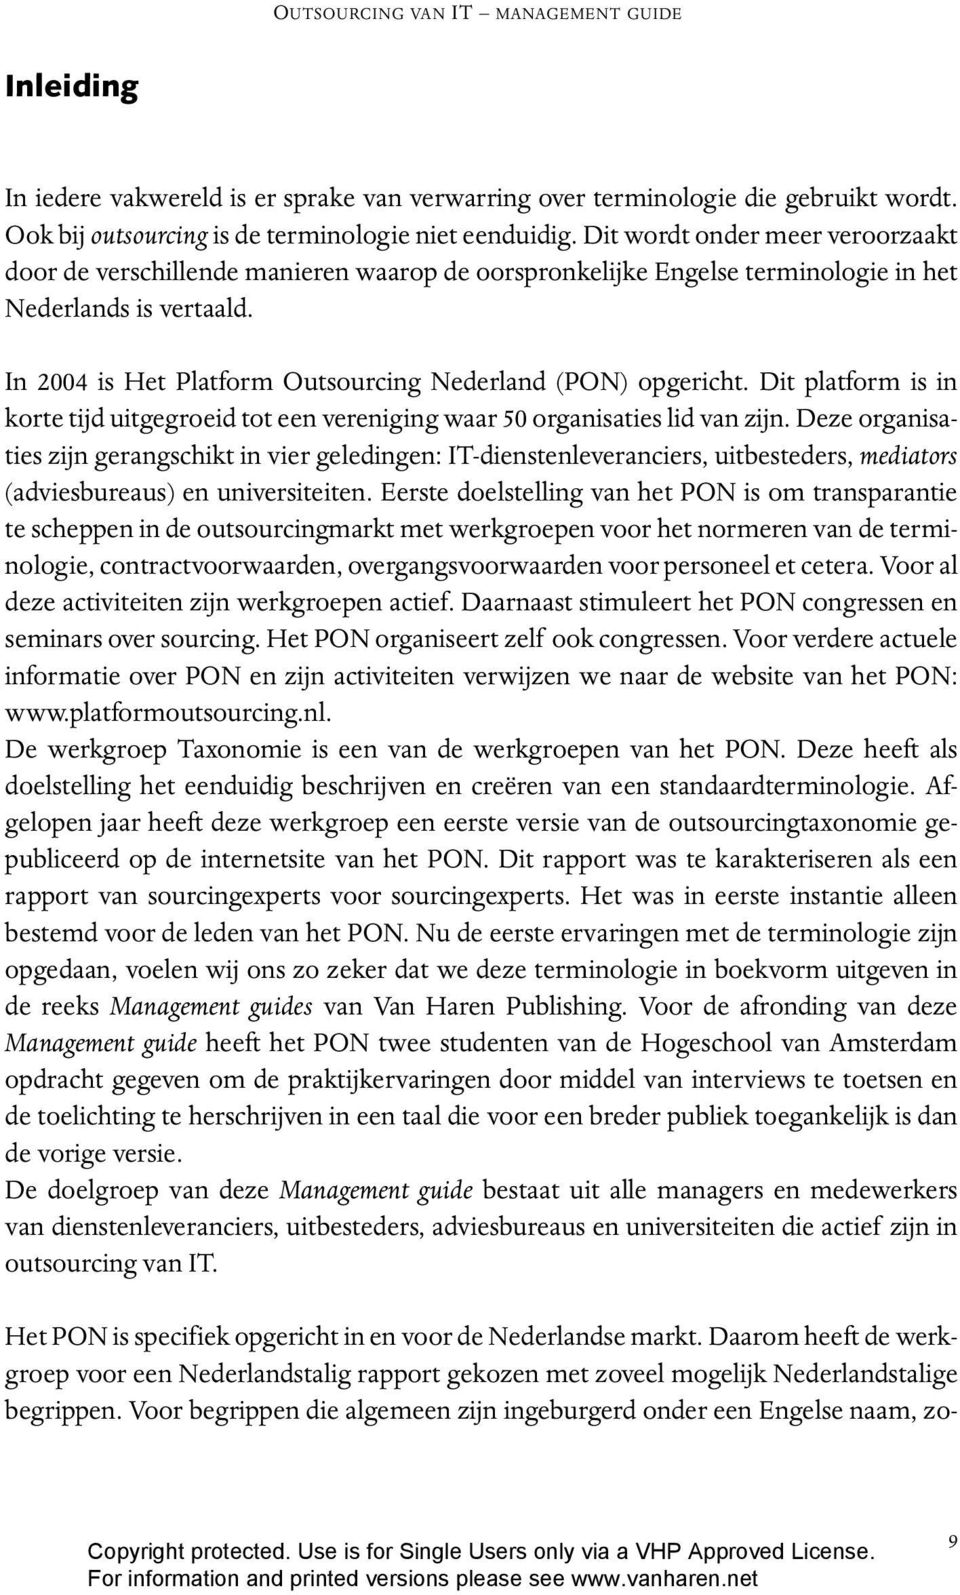 In 2004 is Het Platform Outsourcing Nederland (PON) opgericht. Dit platform is in korte tijd uitgegroeid tot een vereniging waar 50 organisaties lid van zijn.